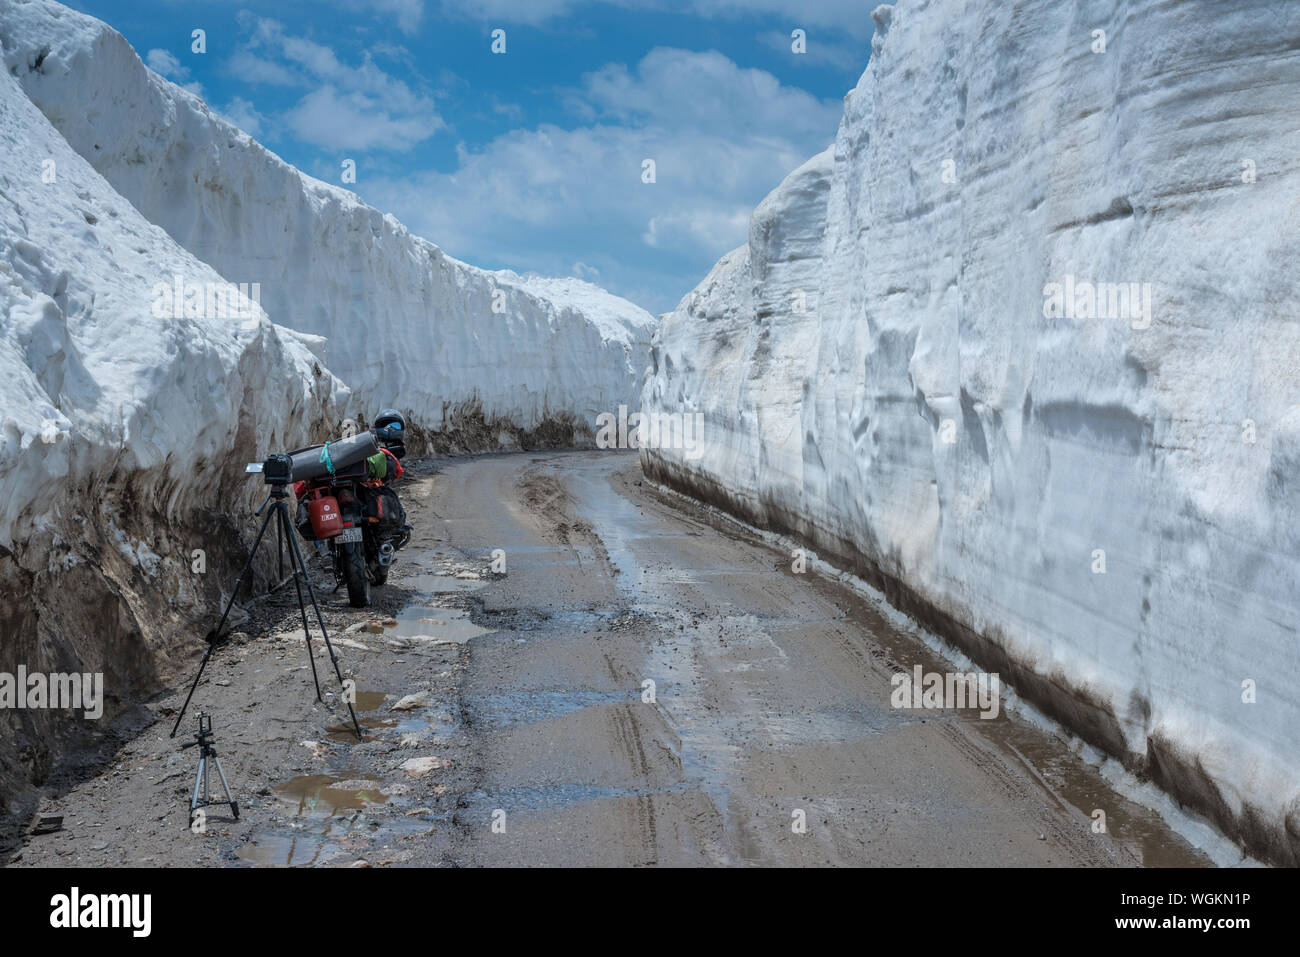 20 Fuß Schnee Wand-Bike im Schnee Rothang Pass im Juni - Stockfoto